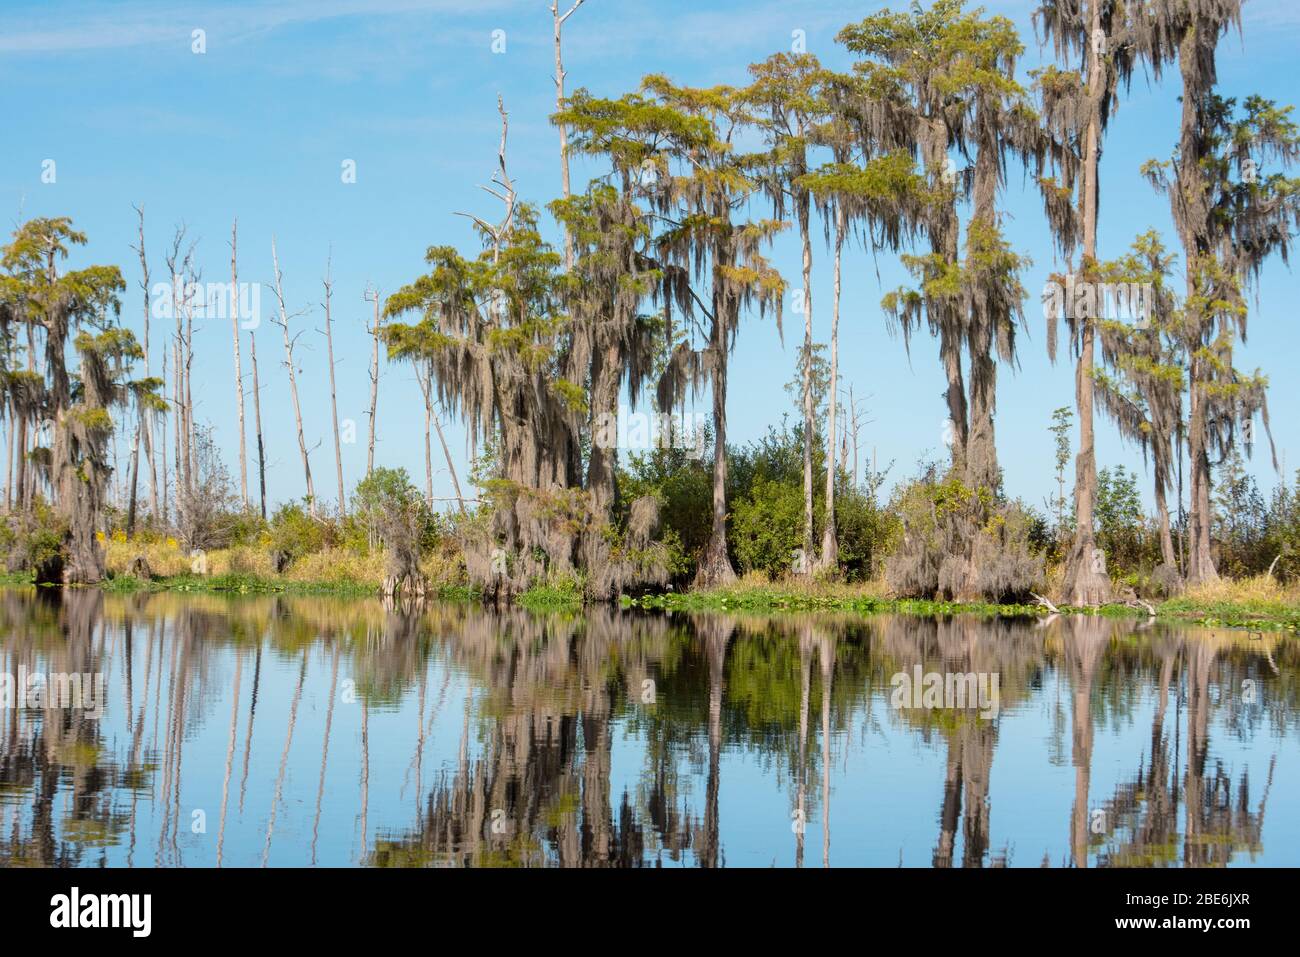 Der Okefenokee Swamp an einem Frühlingstag mit ruhigem reflektierendem Wasser und kahlen Zypressen. Stockfoto